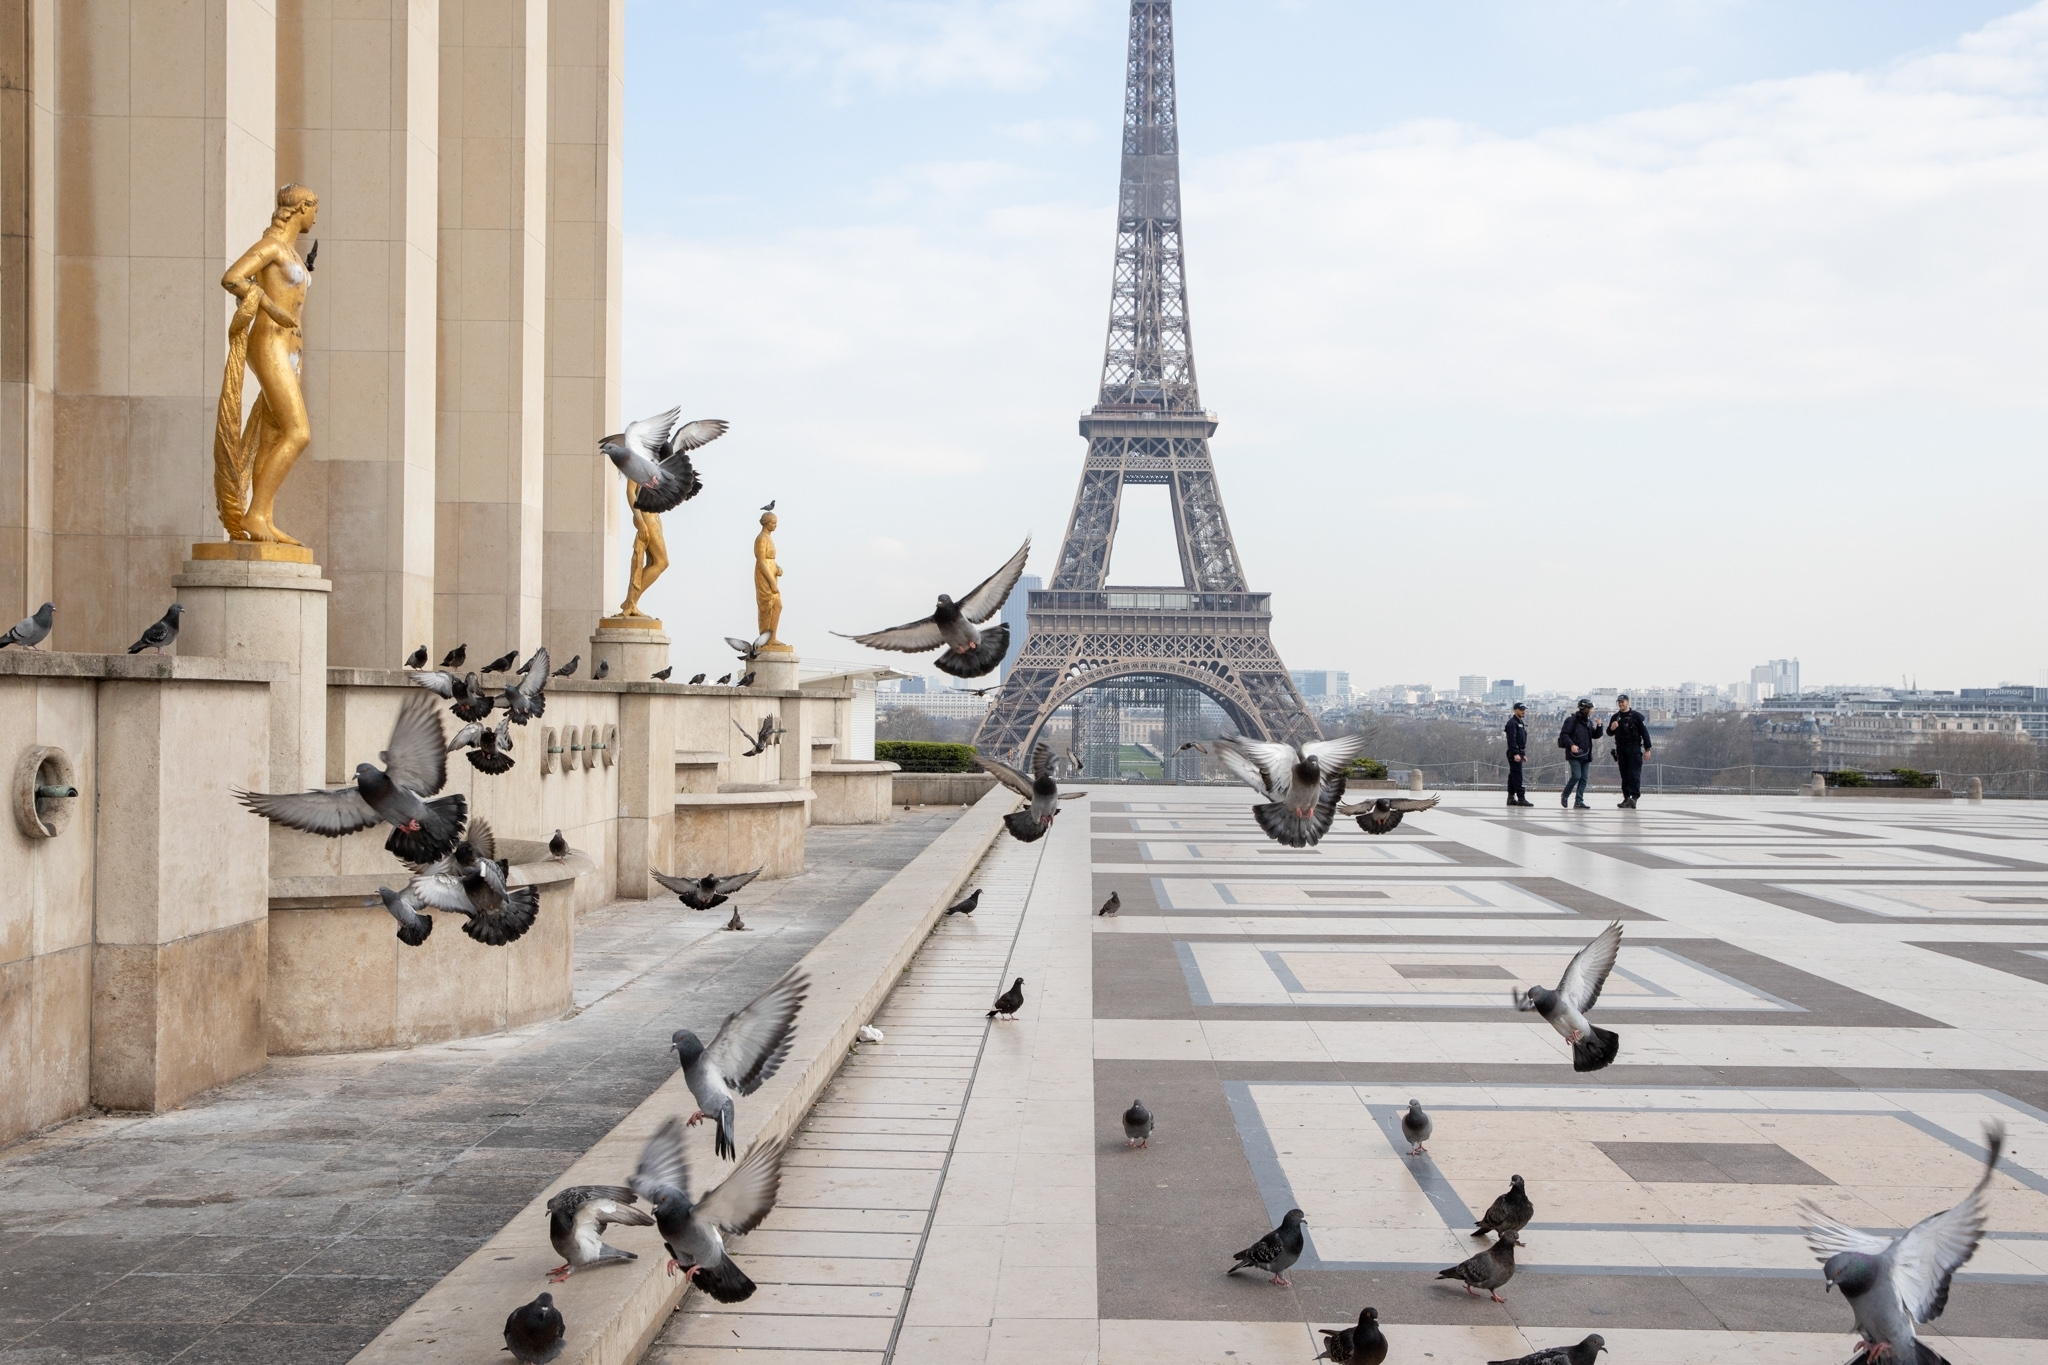 السياحة في باريس